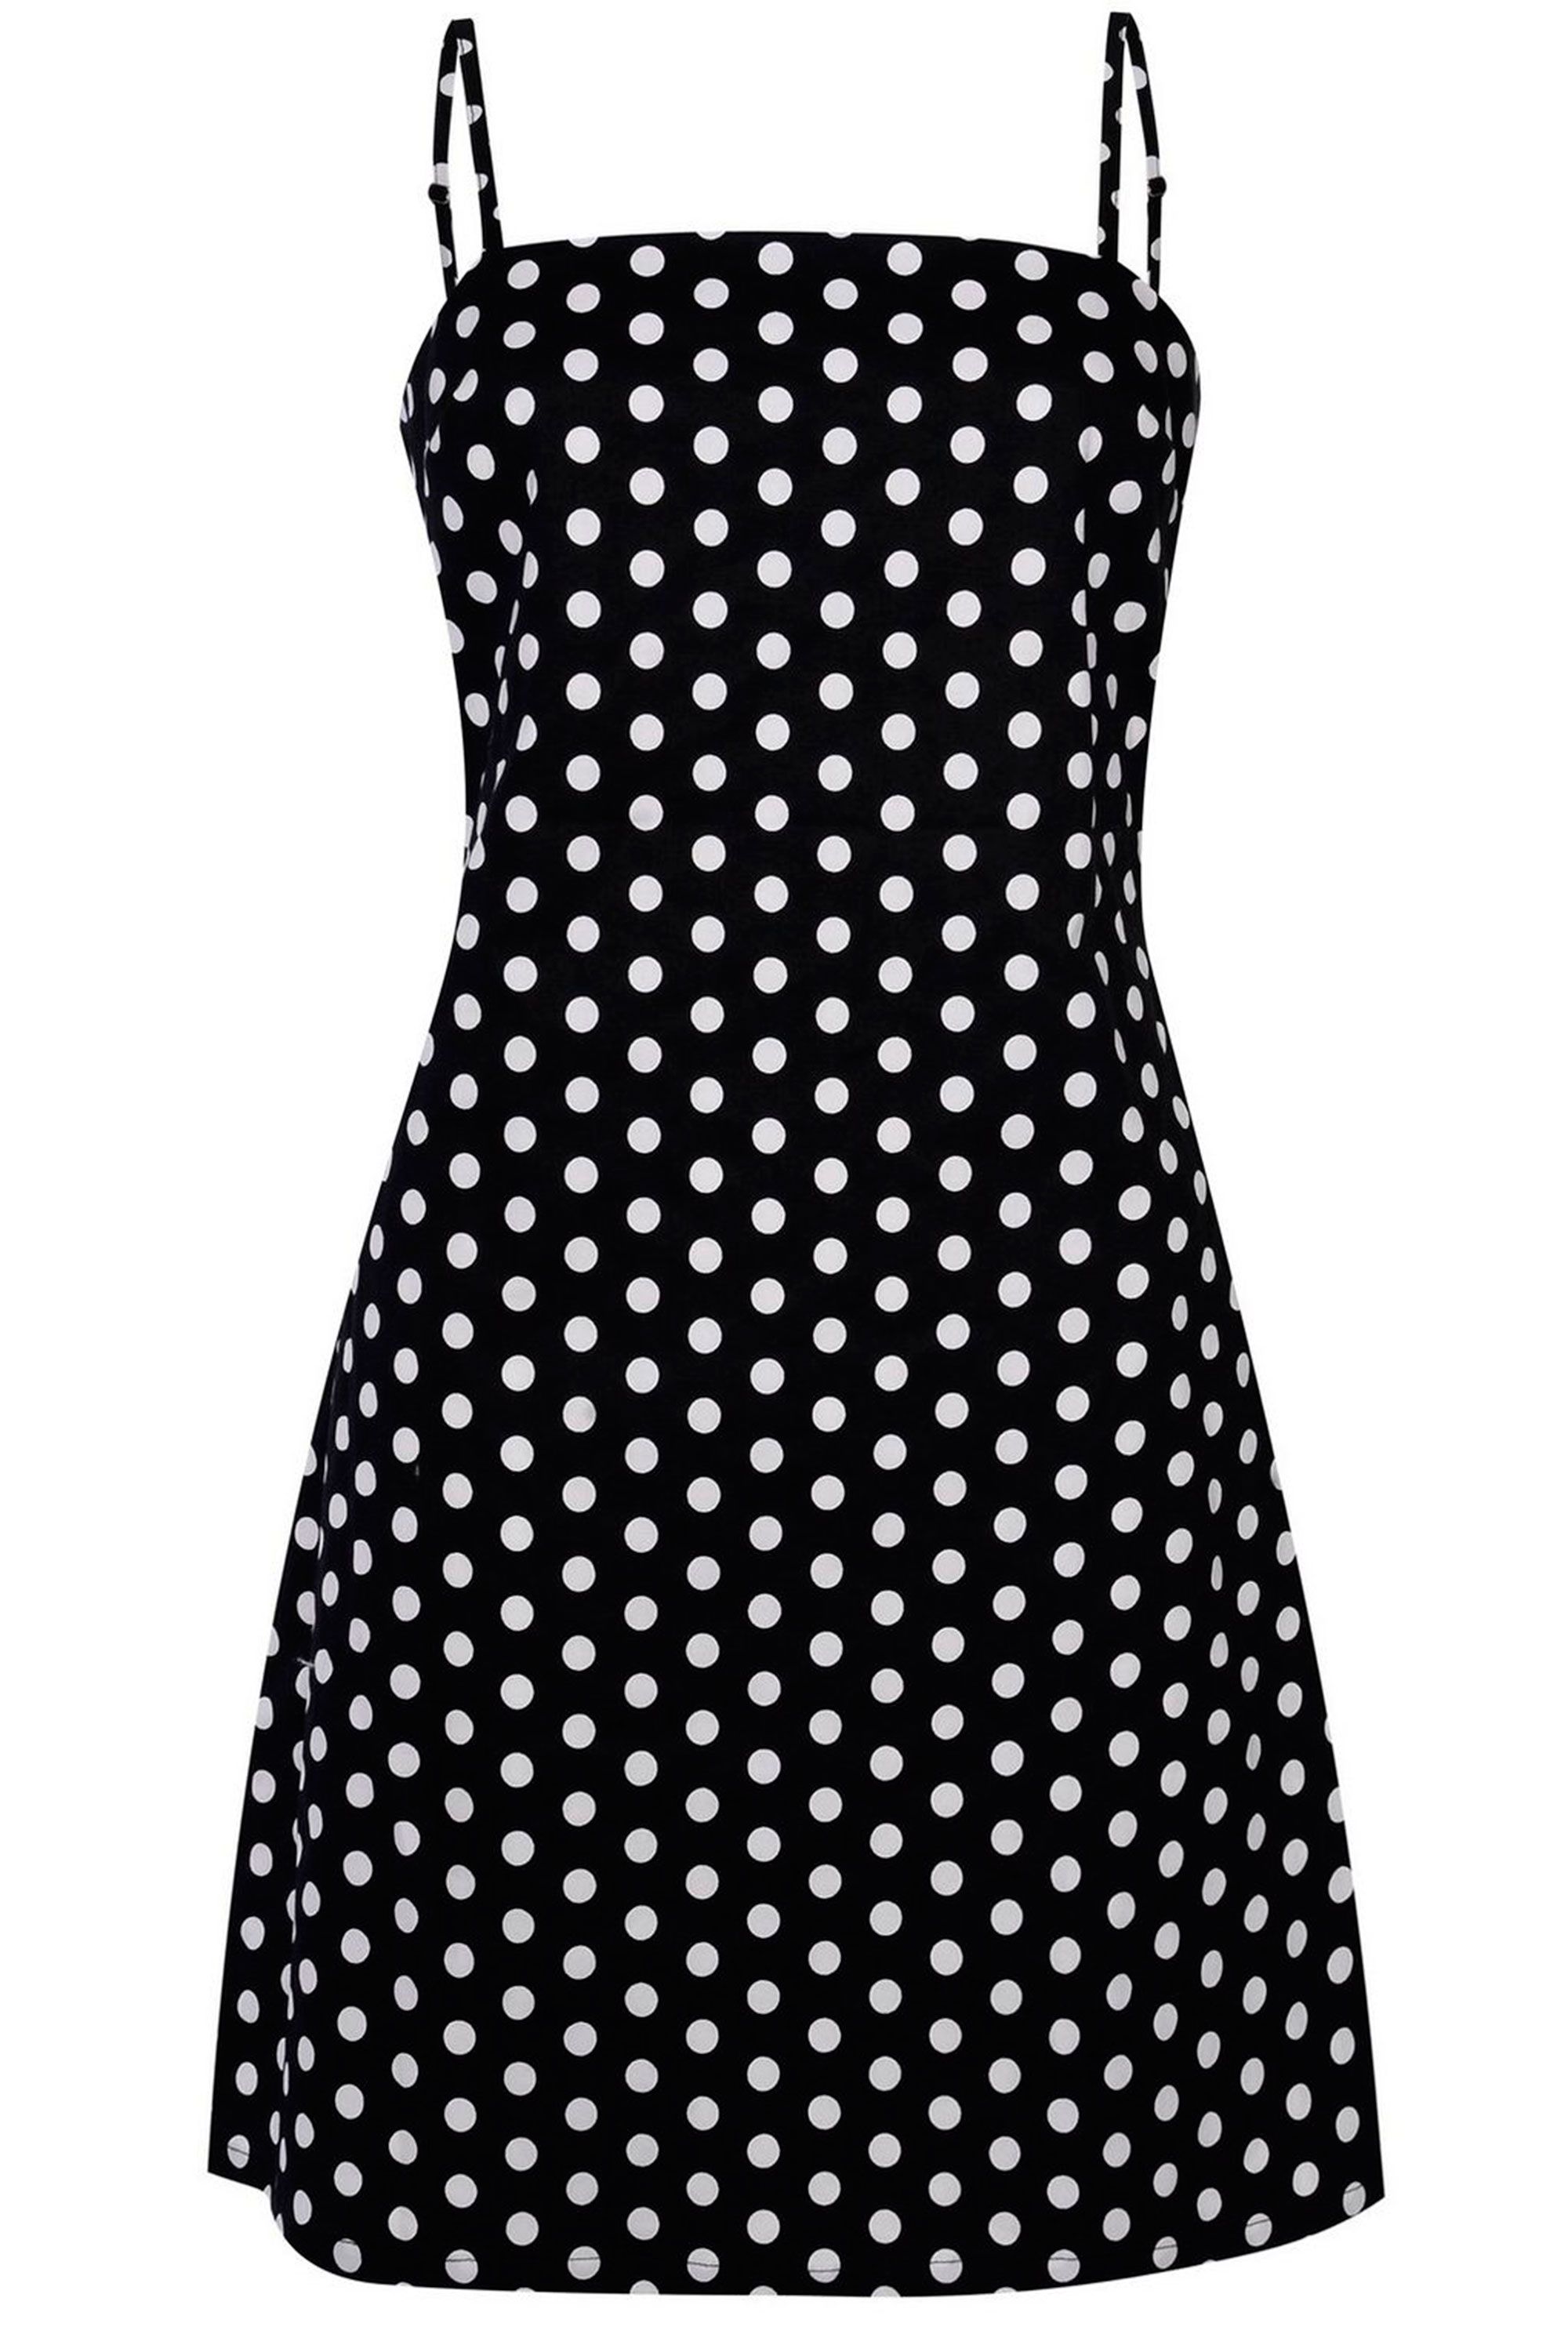 15 best polka dot dresses – Polka-dot ...